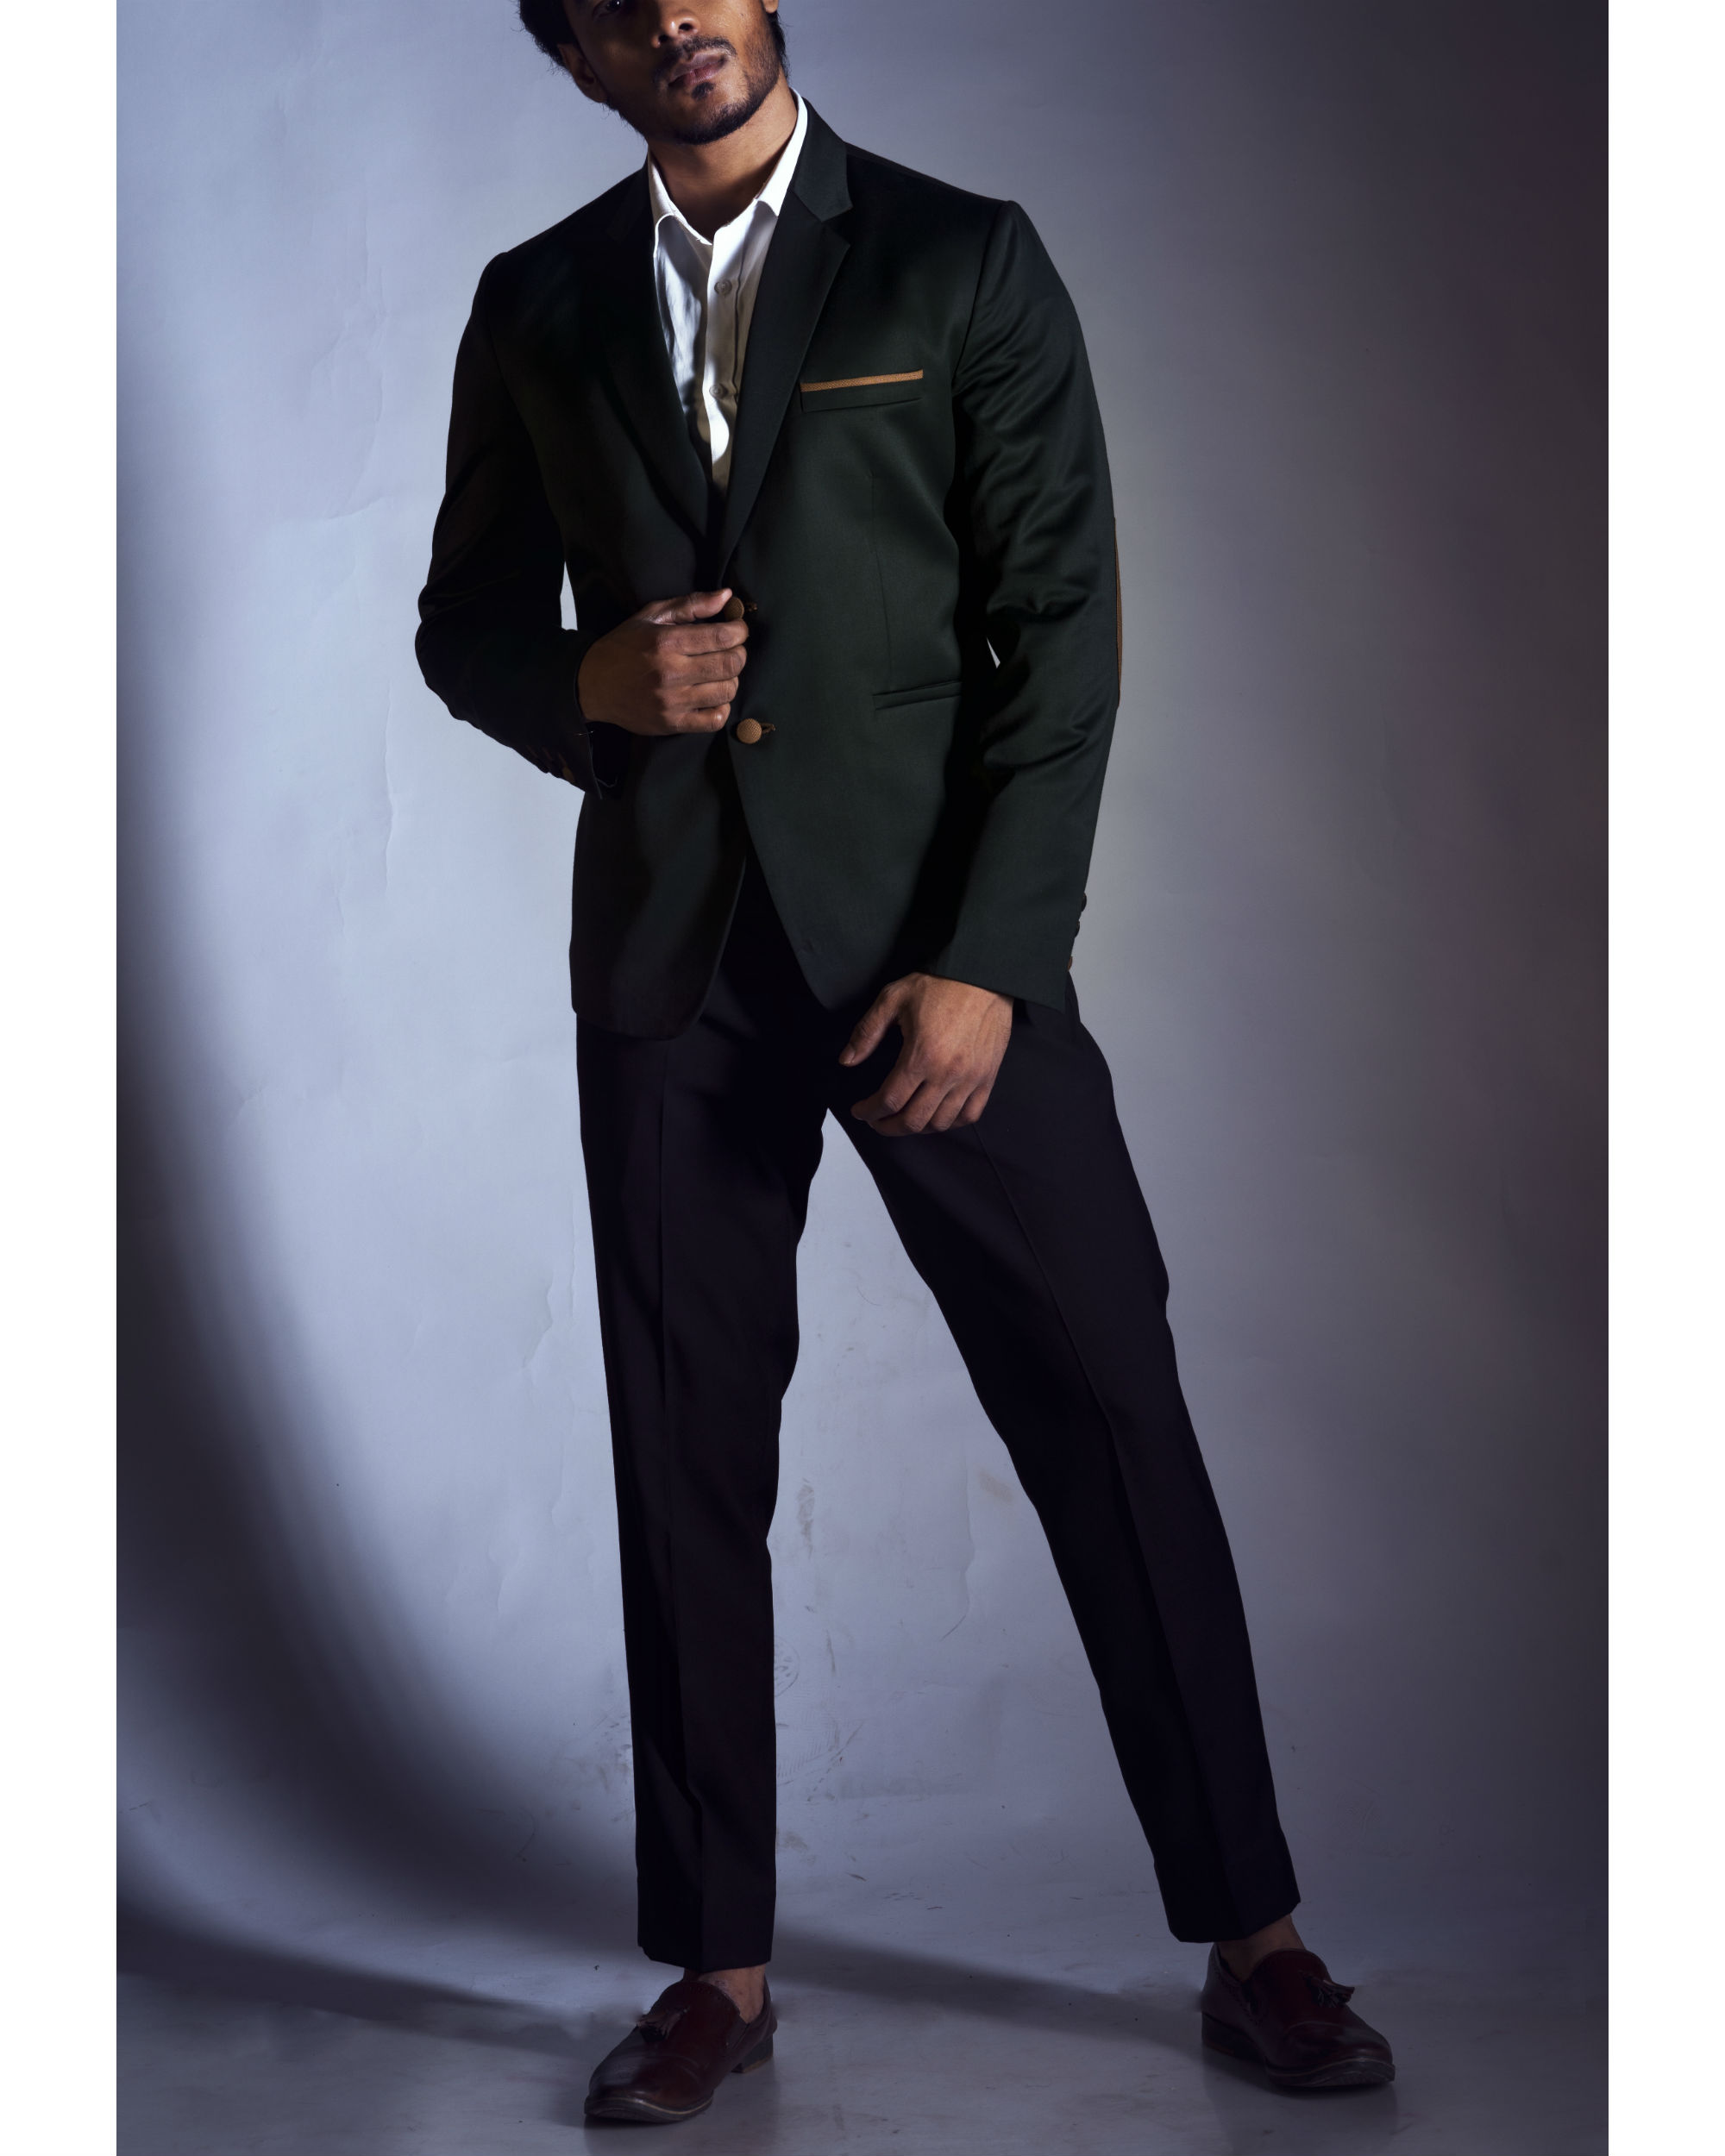 Blazer Trouser Set - Buy Blazer Trouser Set online in India